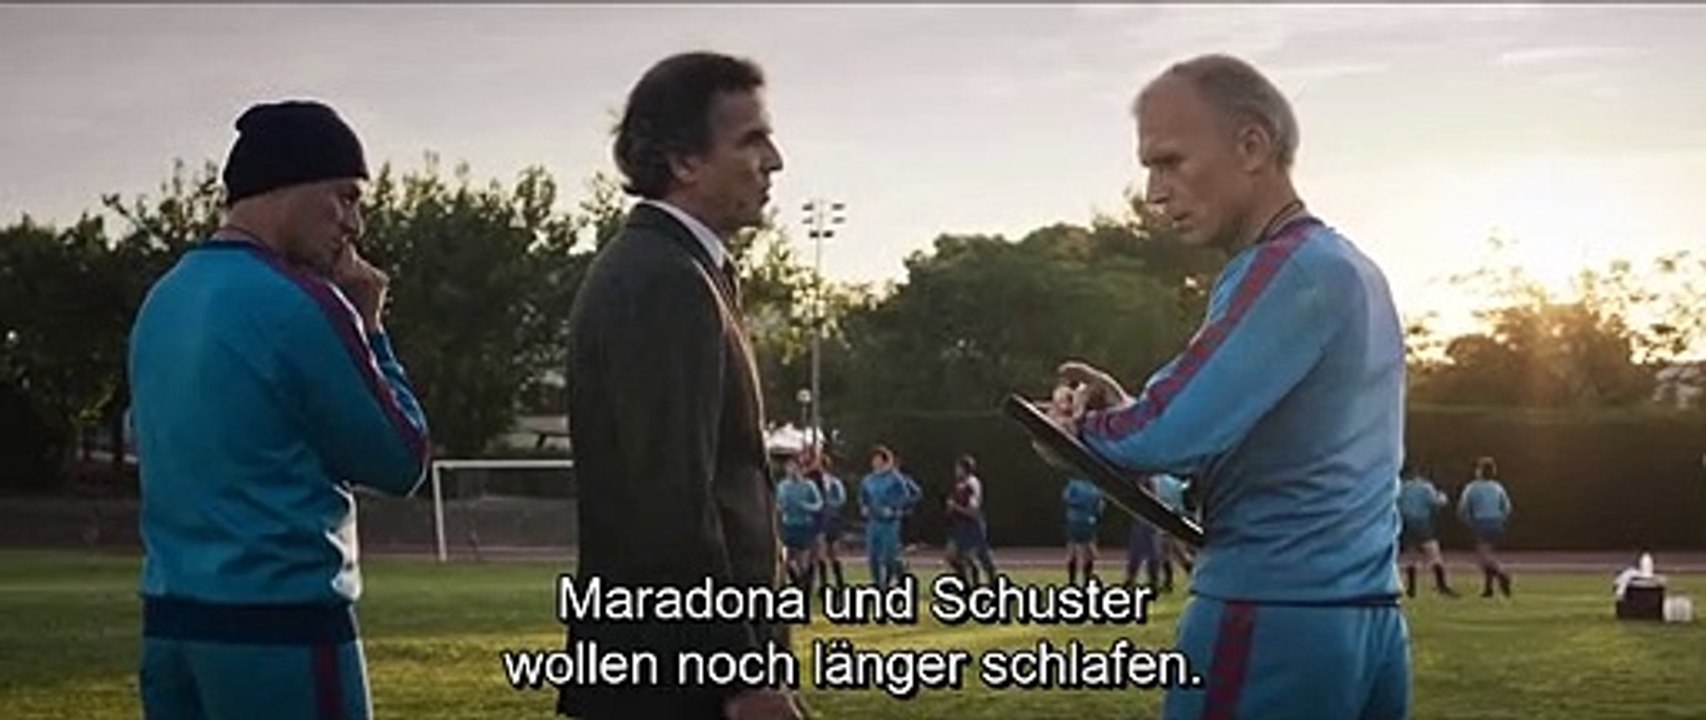 Maradona - Leben wie ein Traum Staffel 1 Folge 4 - Part 01 HD Deutsch